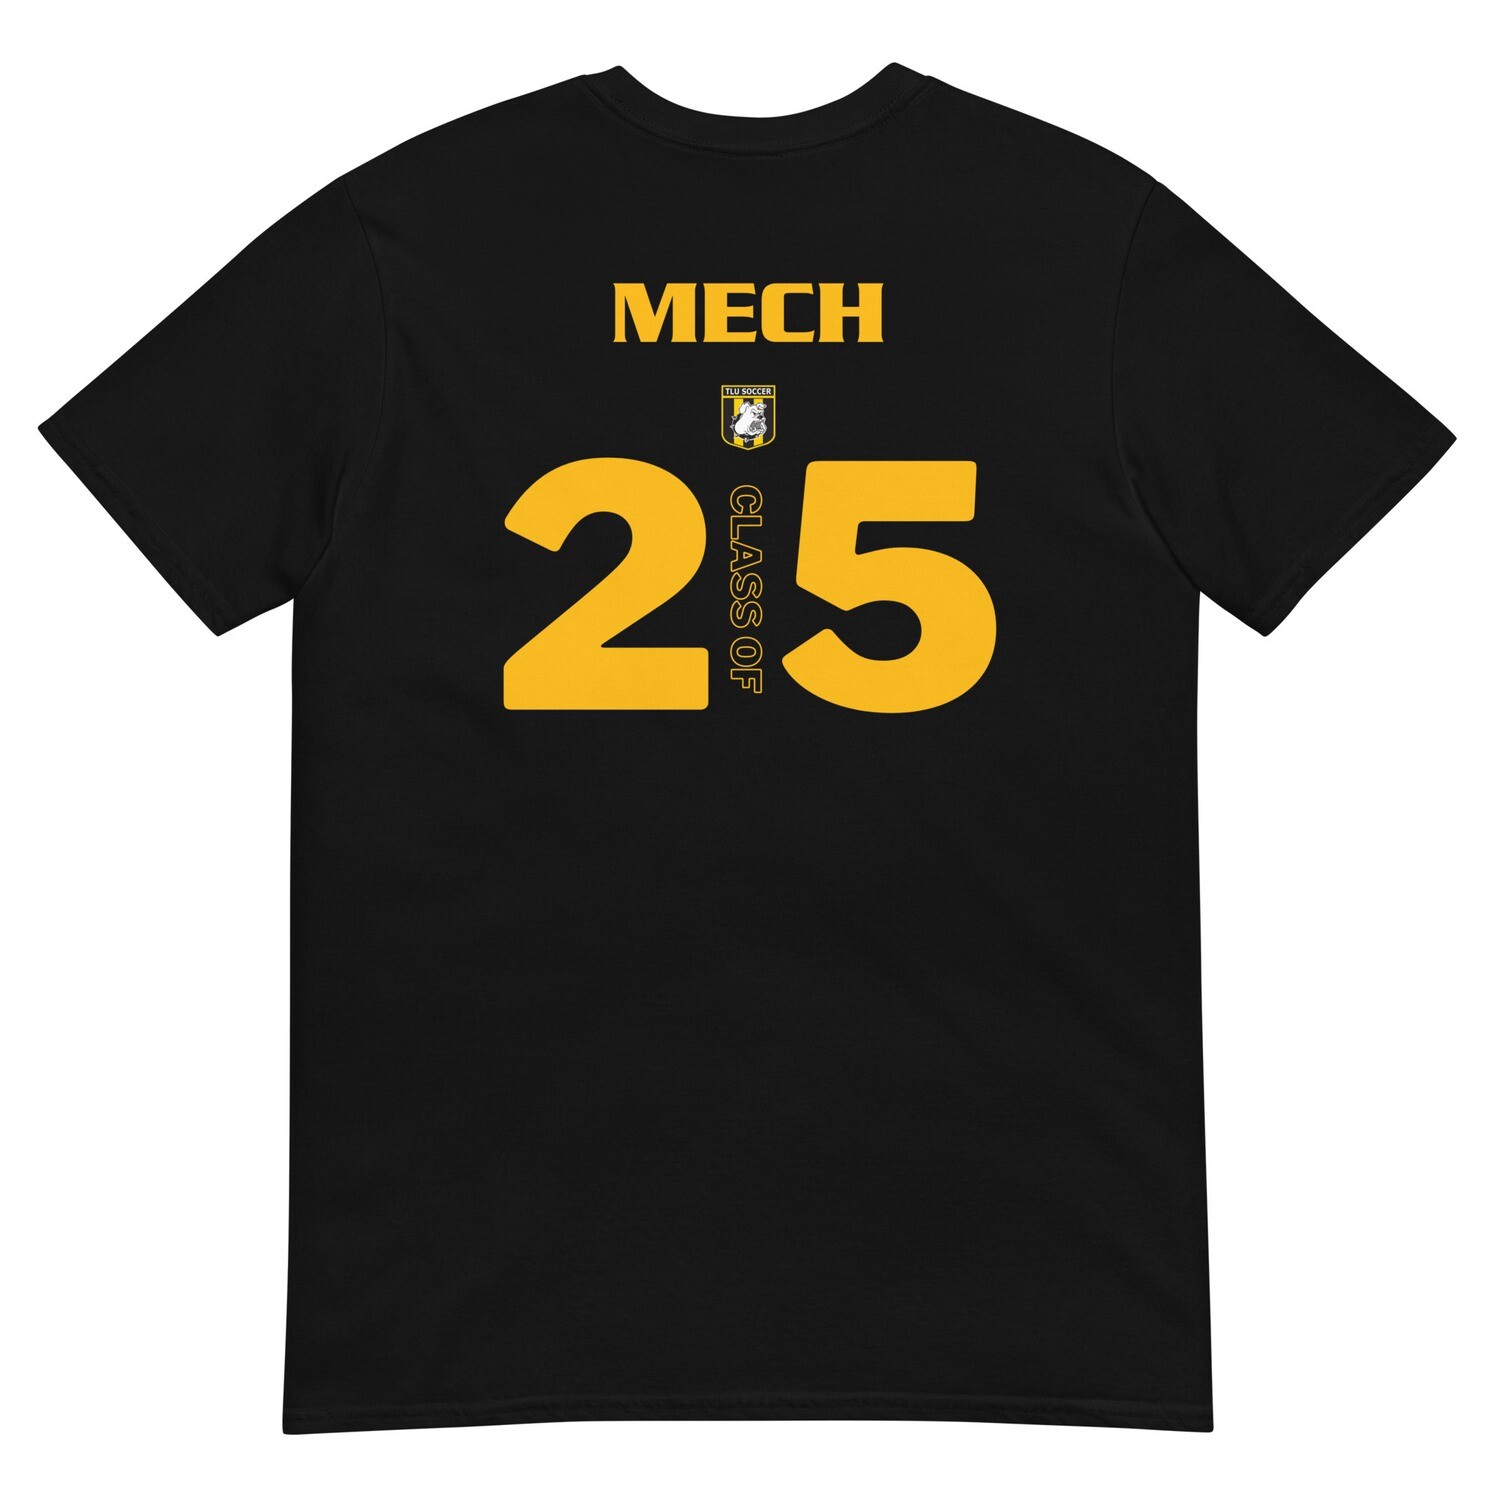 Mech 2025 Short-Sleeve Unisex T-Shirt